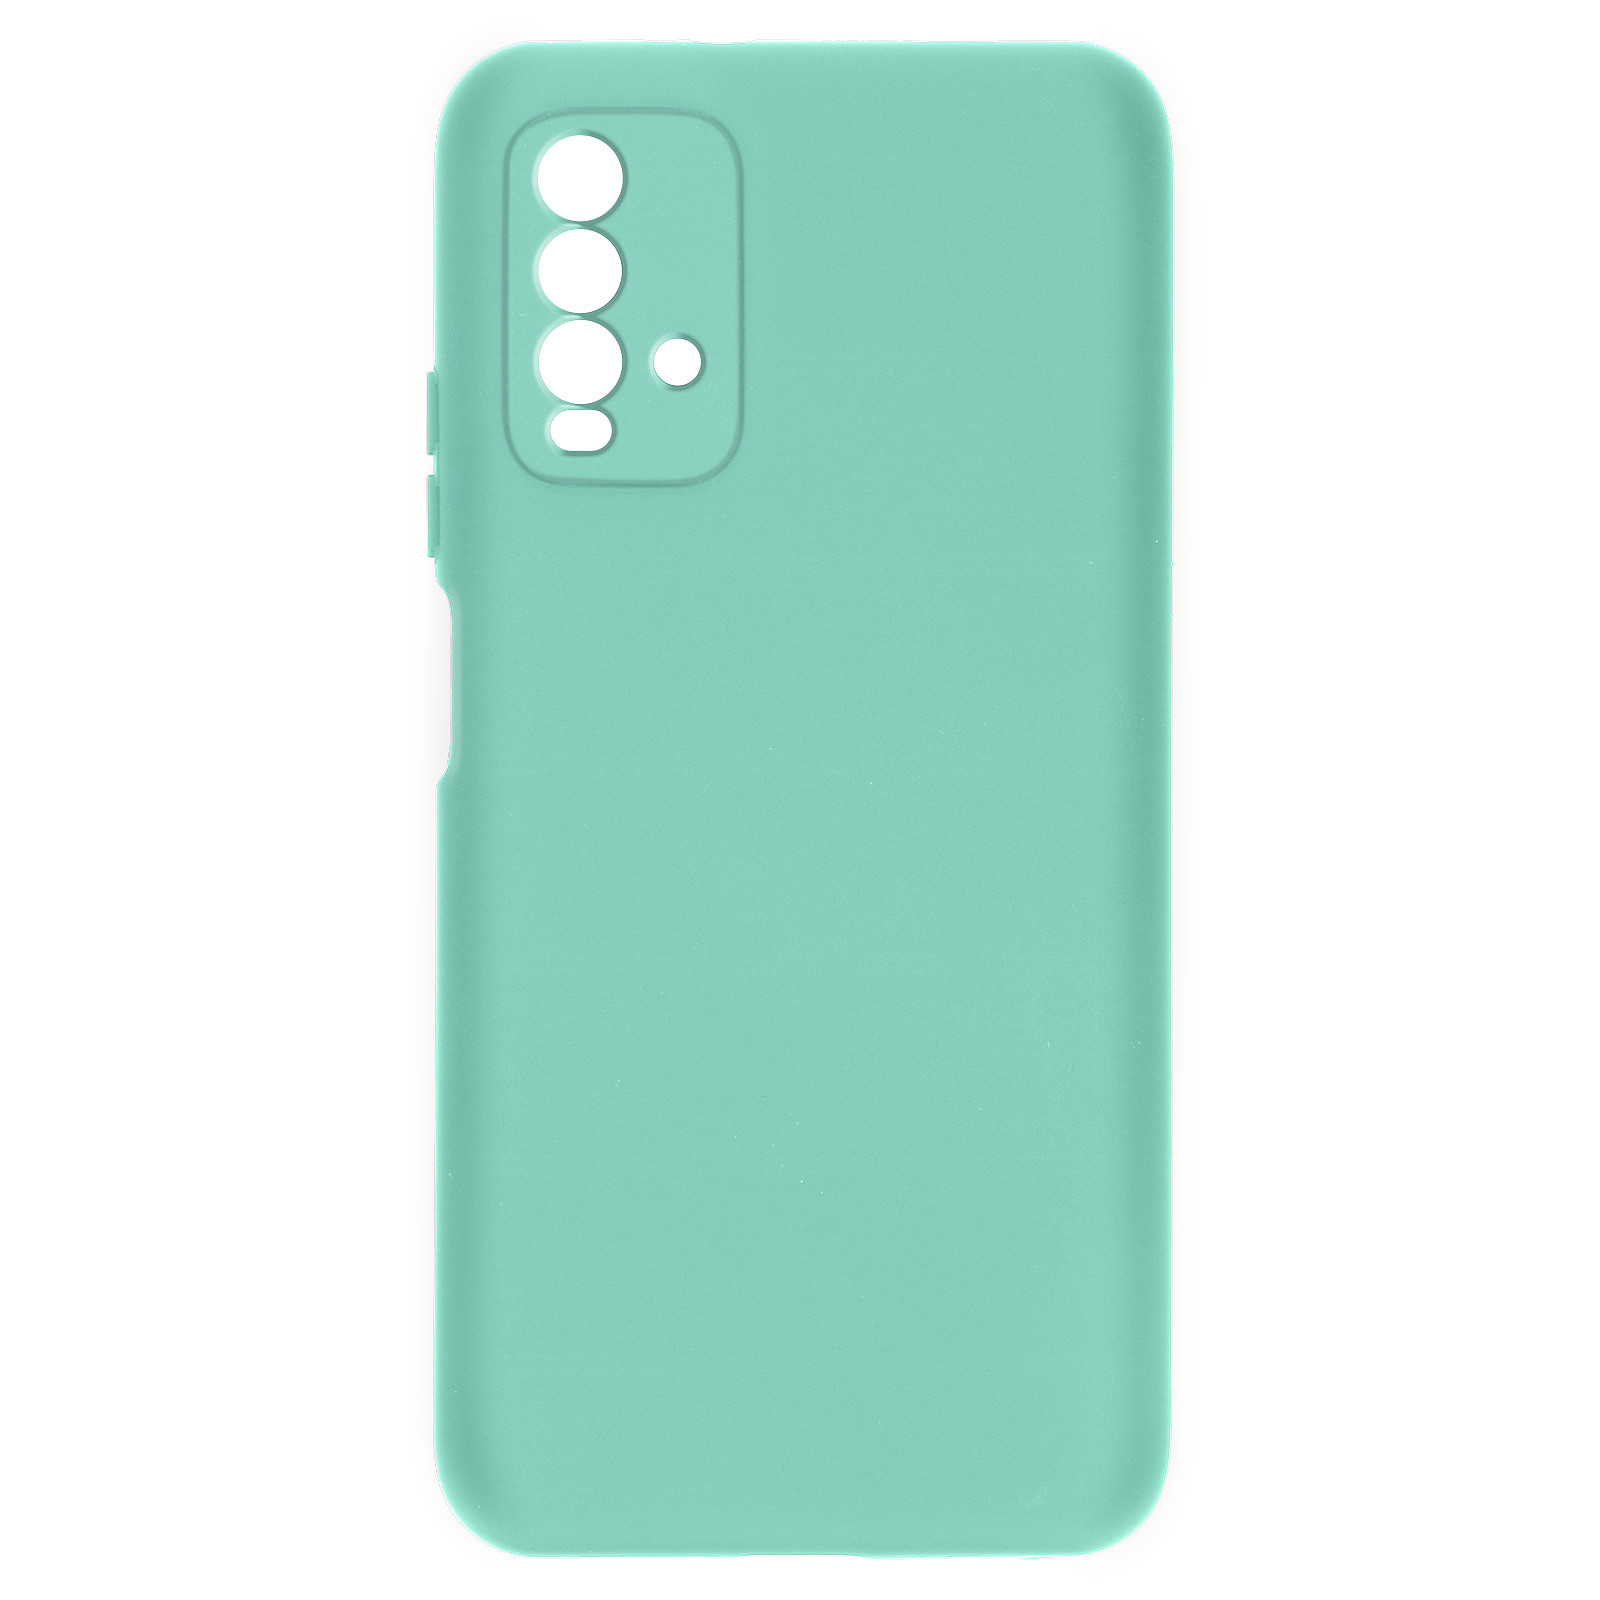 Avizar Coque pour Xiaomi Redmi 9T Silicone Semi-rigide Finition Soft Touch Fine turquoise - Coque telephone Avizar